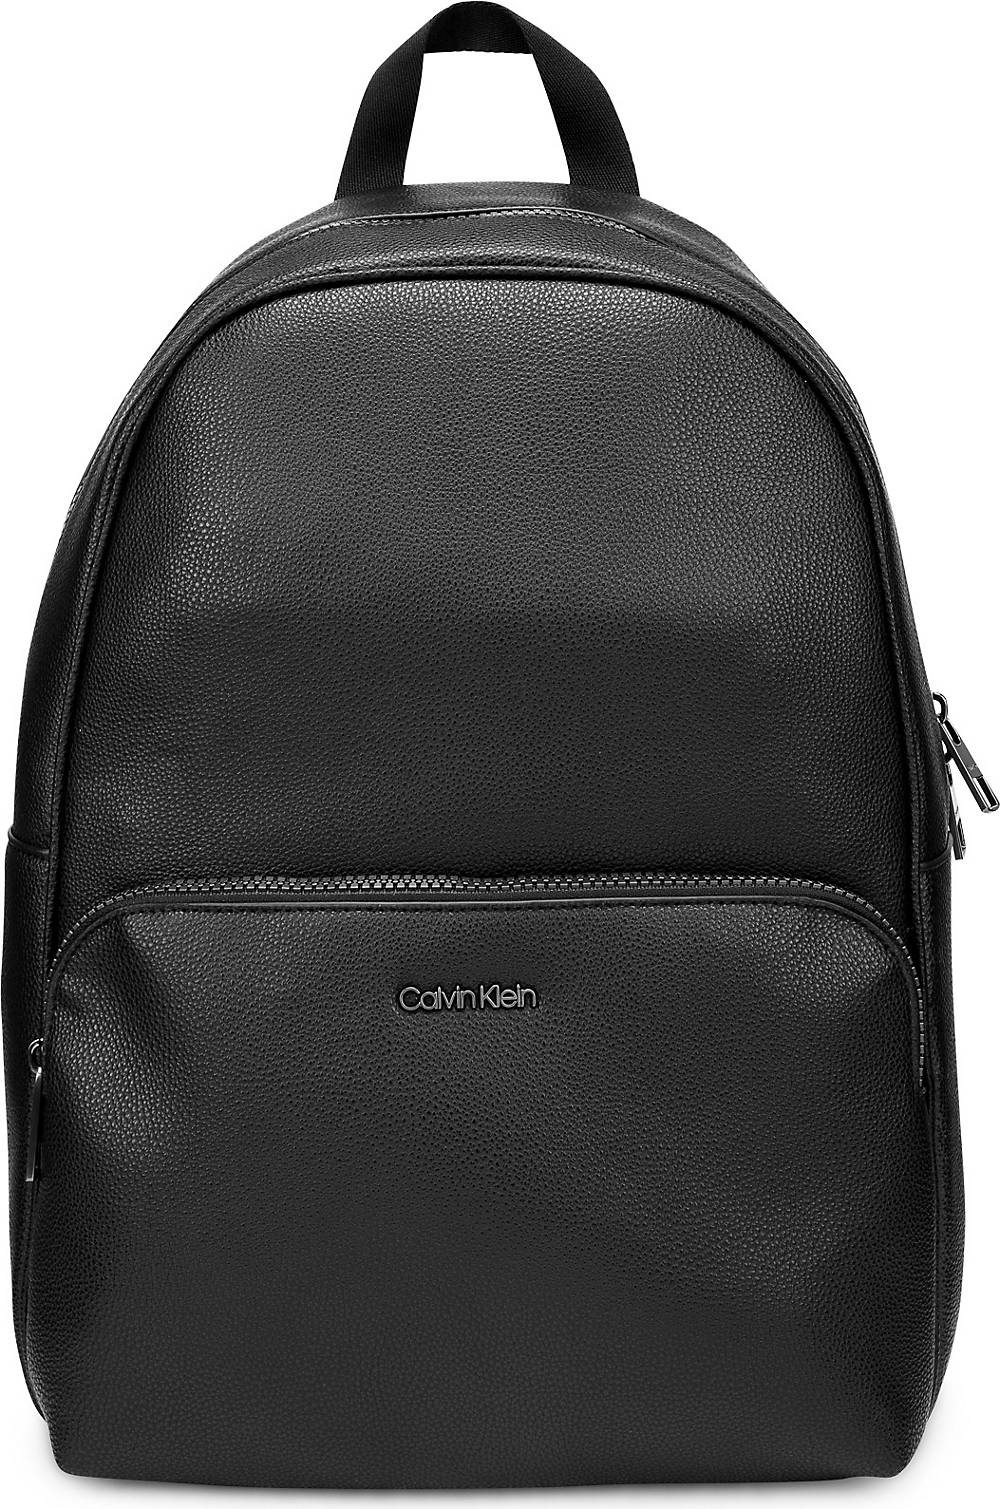 Calvin Klein, Rucksack in schwarz, Rucksäcke für Herren